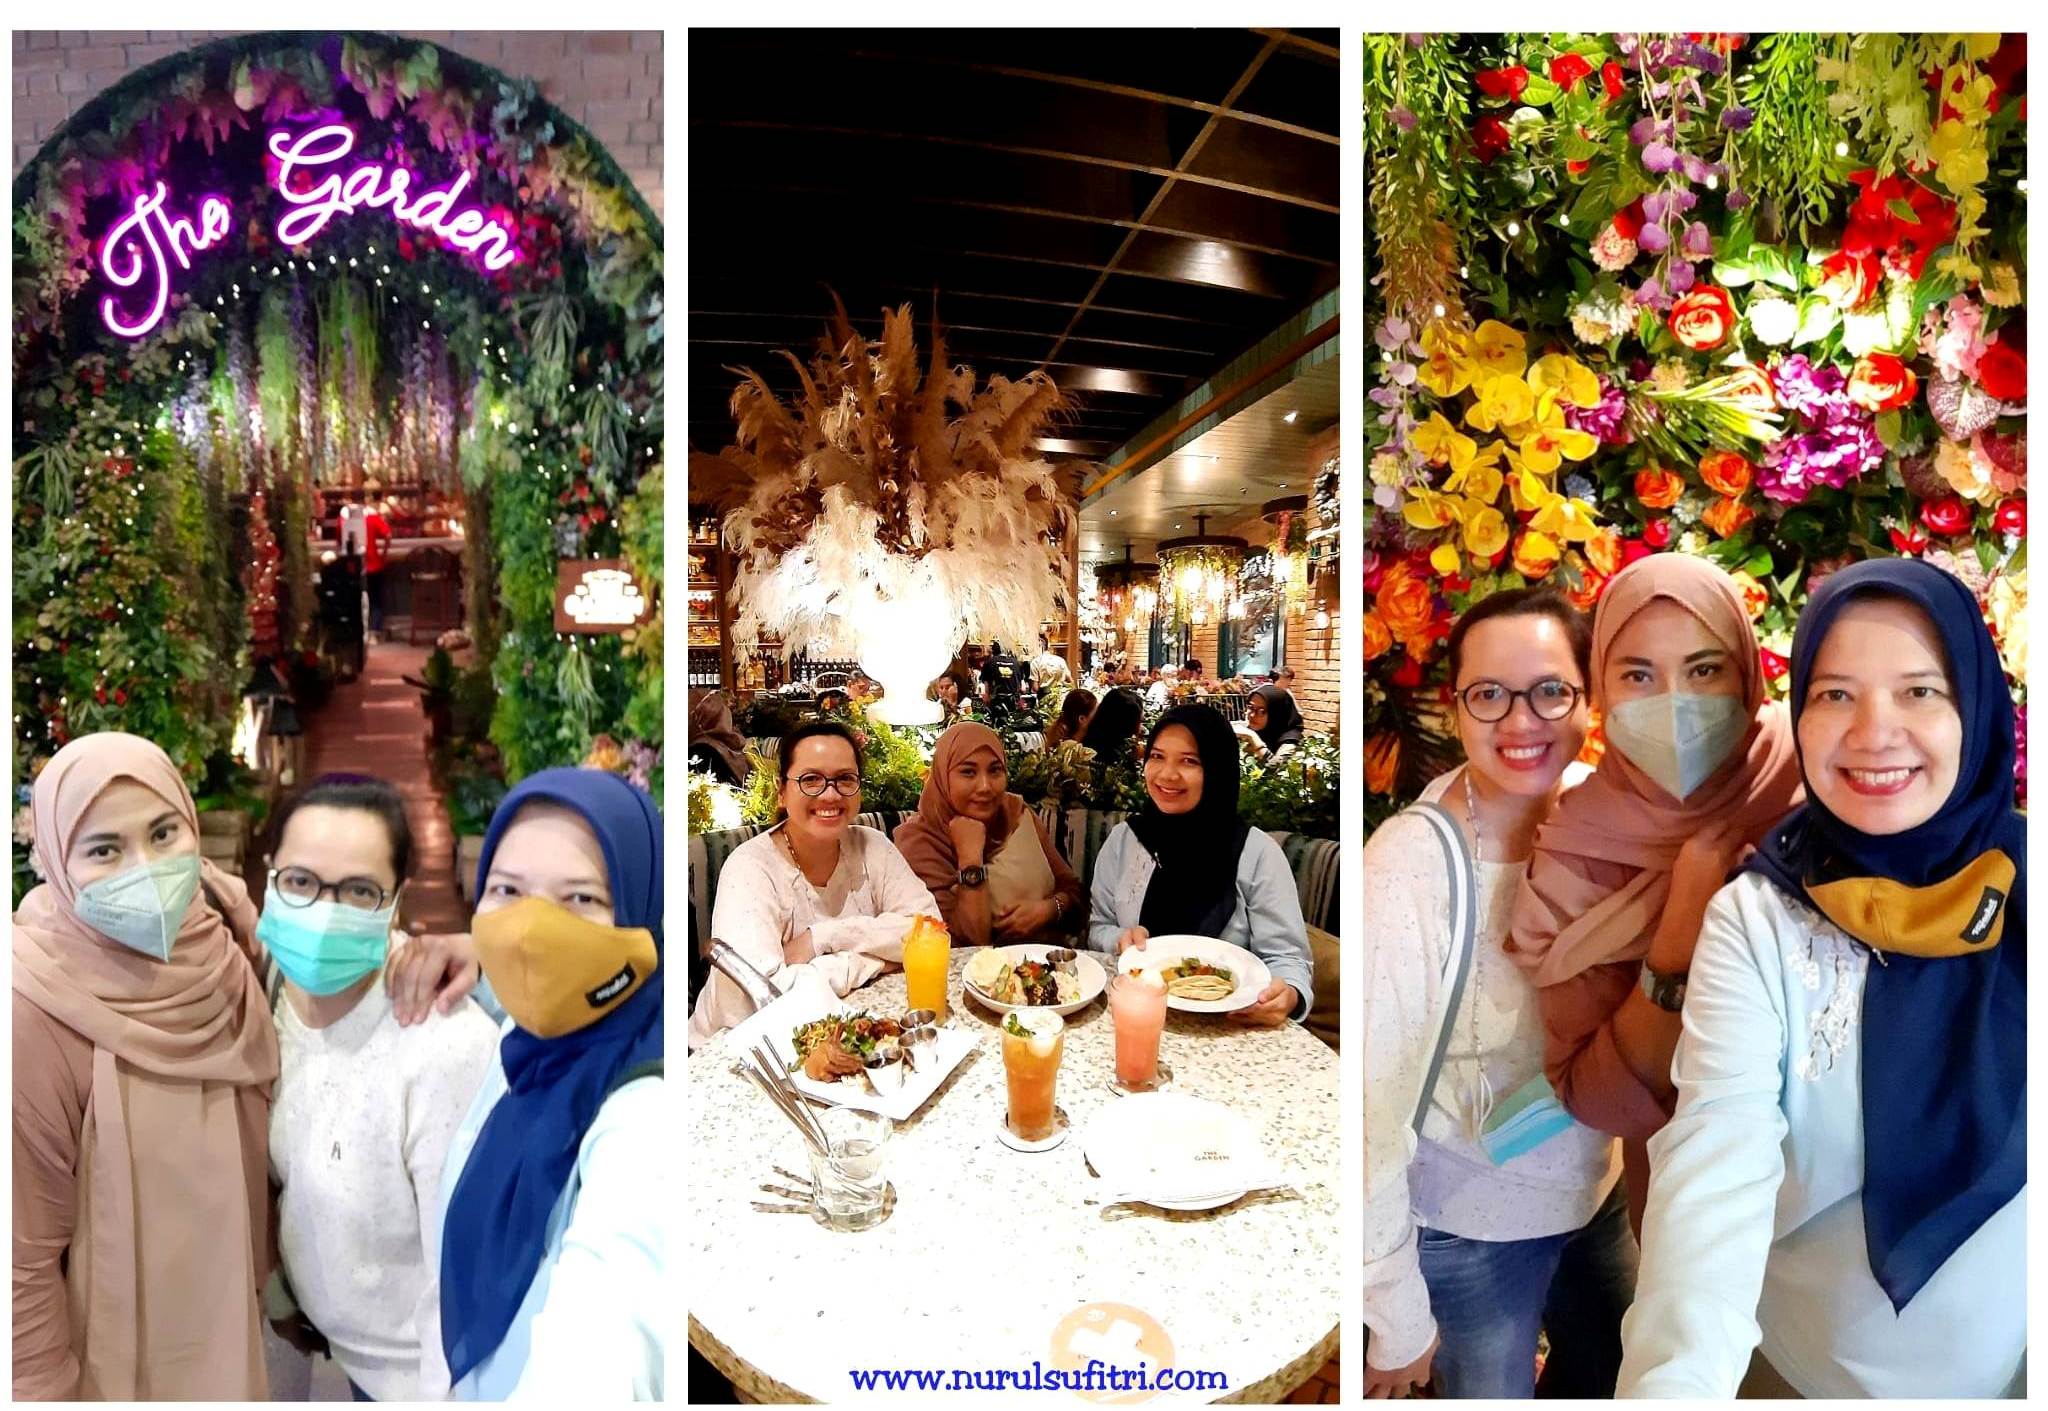 The Garden Pondok Indah Mall Tempat Makan Enak Mewah dan Instagramable Nurul Sufitri Travel Blog